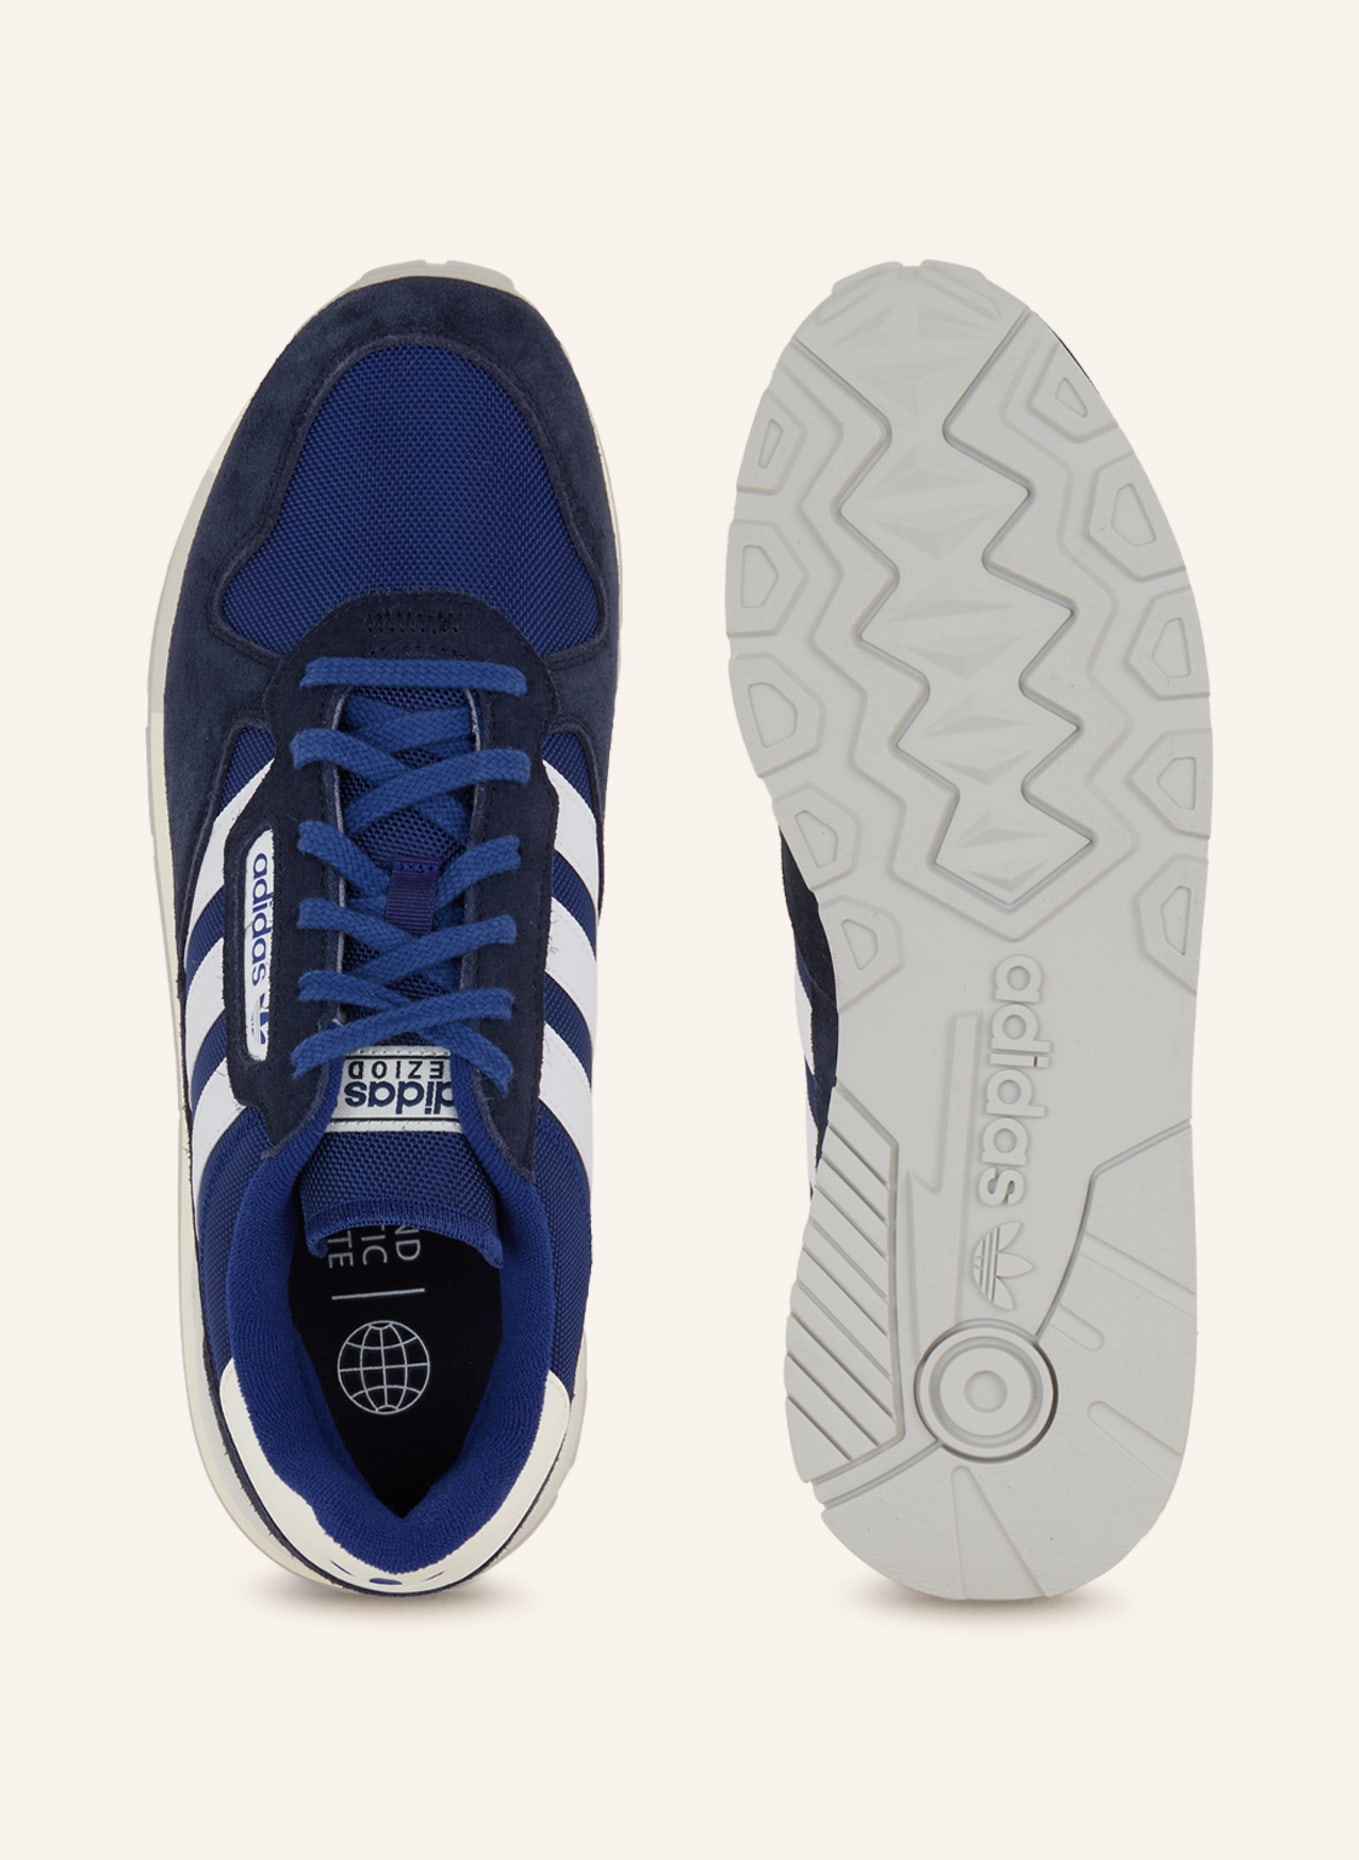 dark white/ TREZIOD adidas 2 in blue blue/ Originals Sneakers